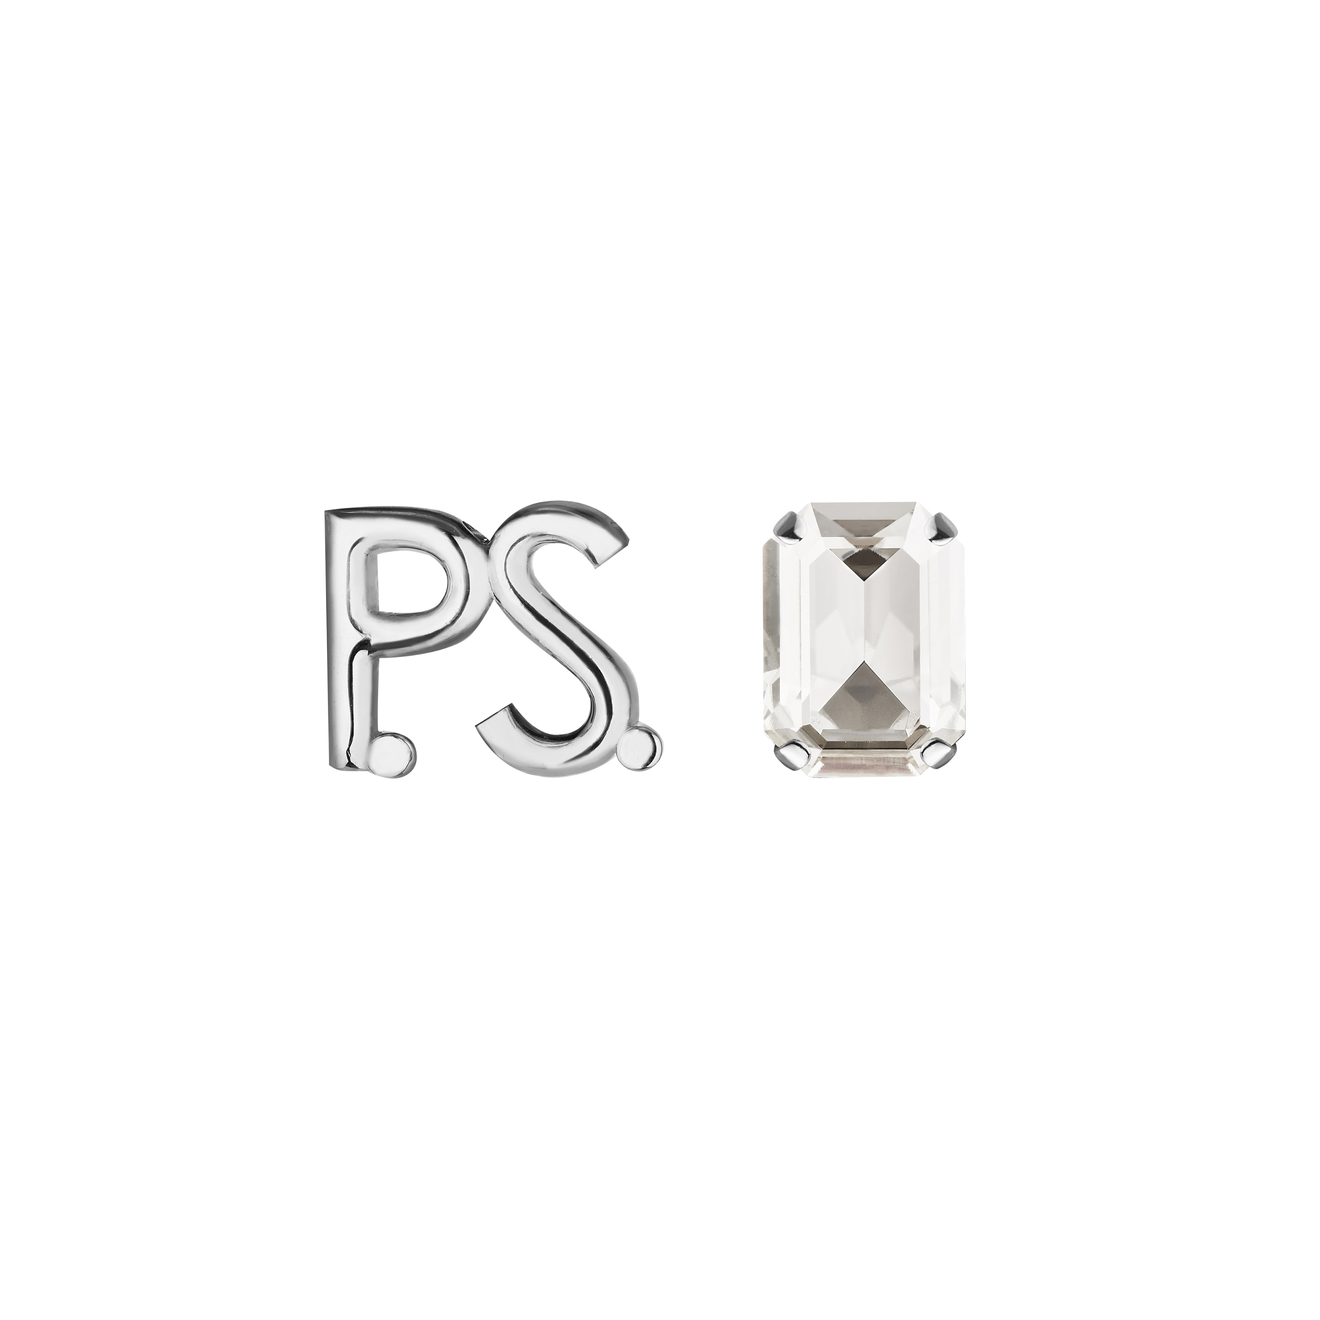 Phenomenal Studio Серьги с фирменным логотипом и крупным кристаллом P.S. Crystal Rhodium phenomenal studio кольцо с серебряным покрытием с регулируемым размером octagon rhodium